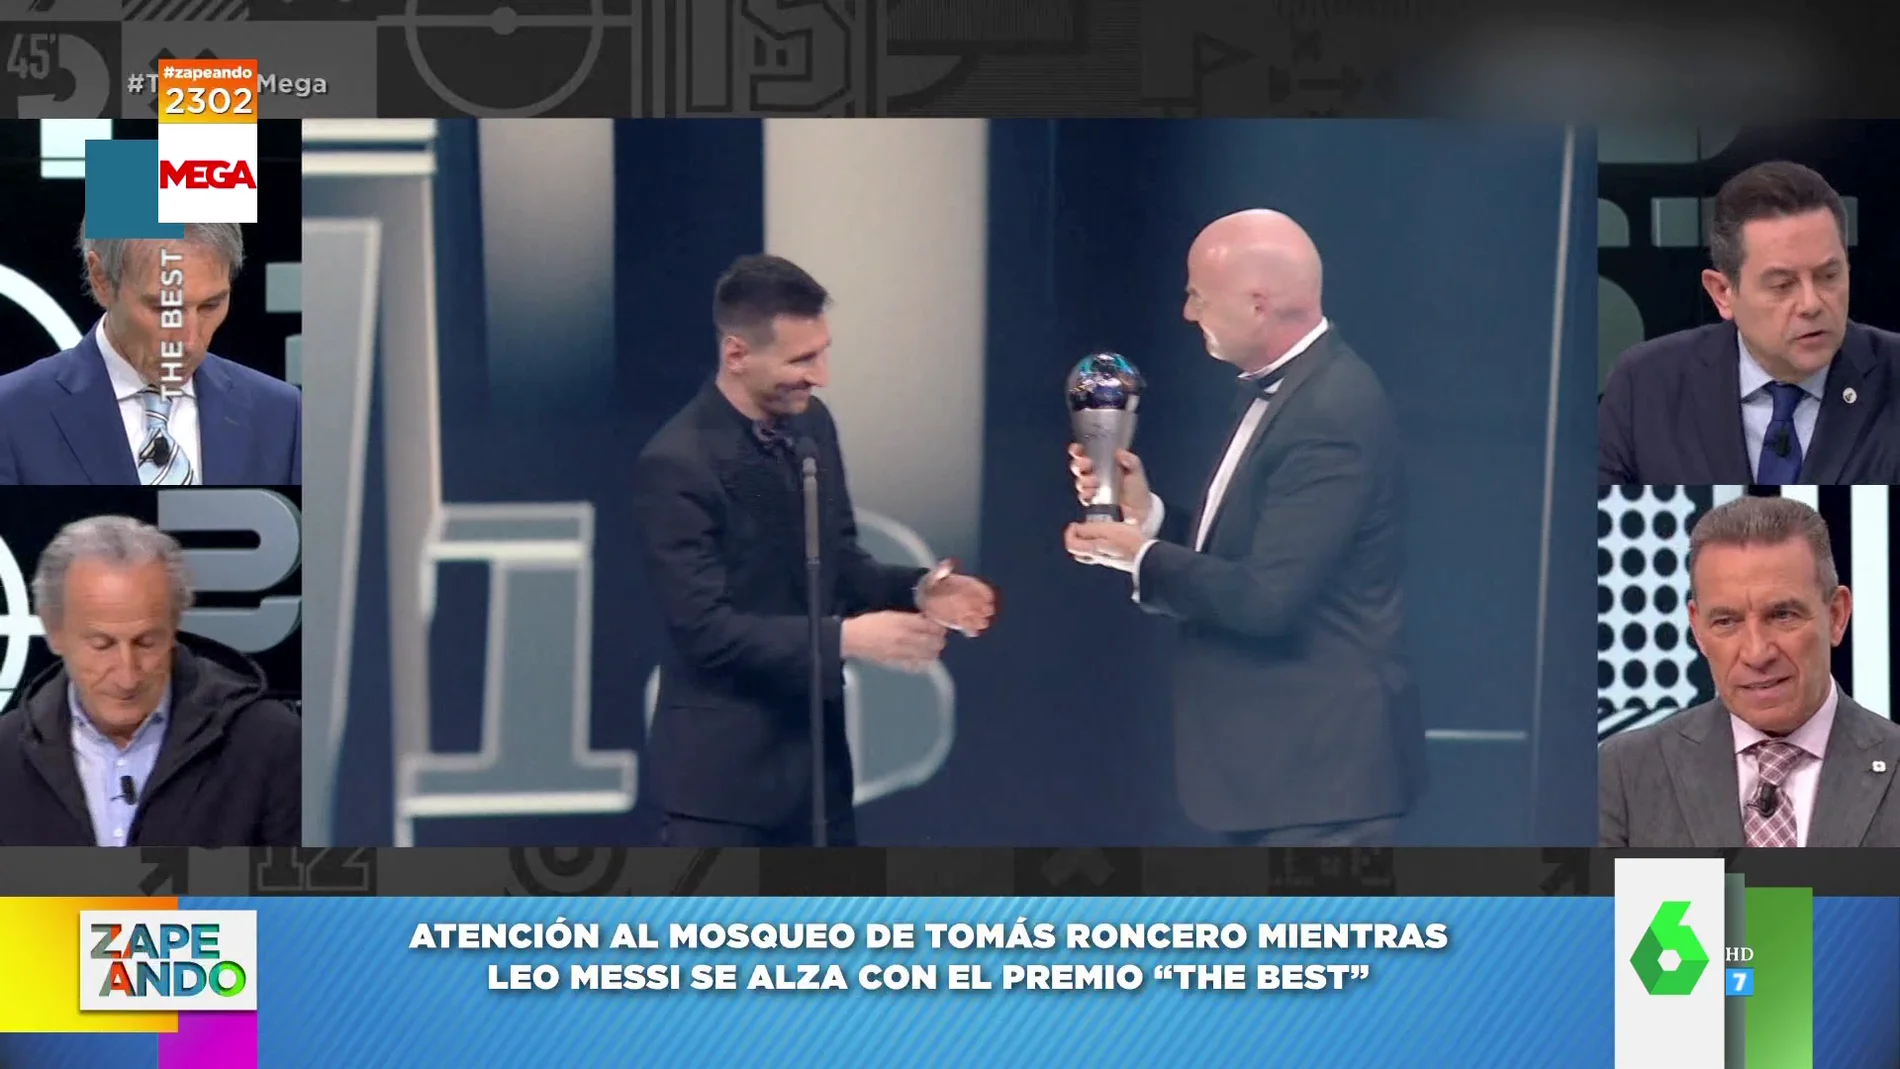 El enfado viral de Roncero al ver cómo Messi se proclama Mejor Futbolista del Mundo 